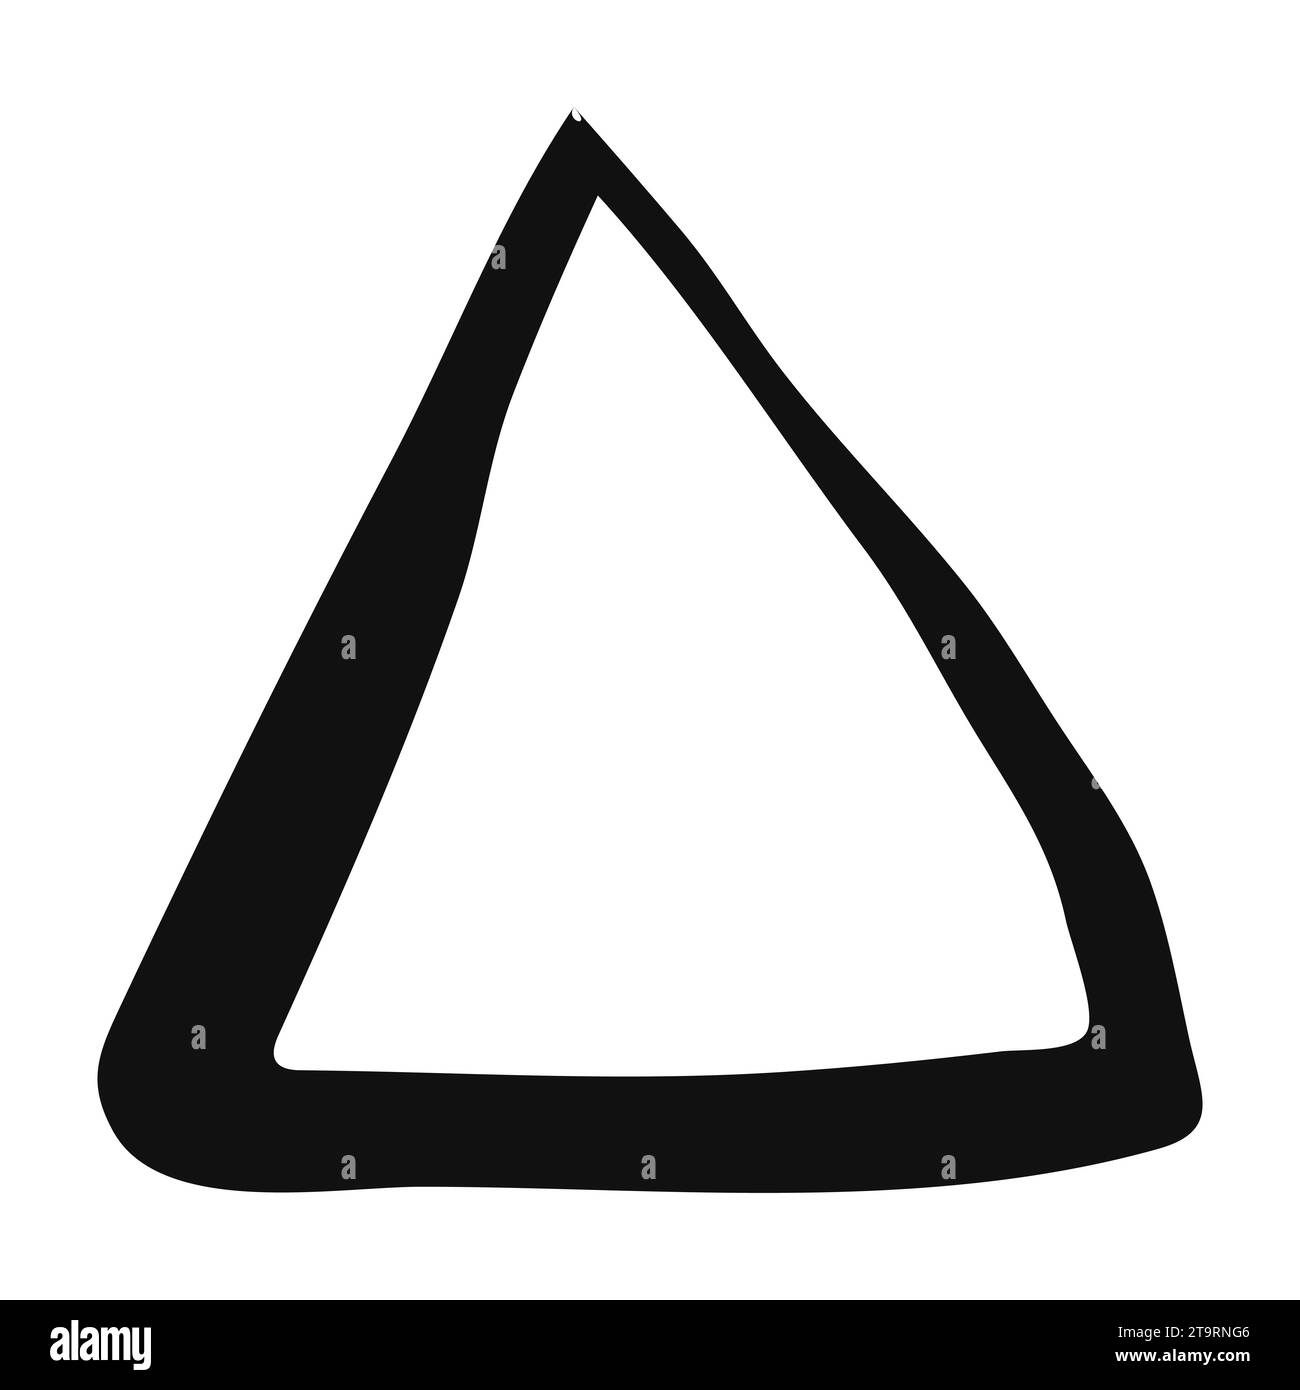 Handbemalte Dreiecksbanner mit schwarzer Tintenbürste, isoliert auf weißem Hintergrund. Vektordarstellung Stock Vektor